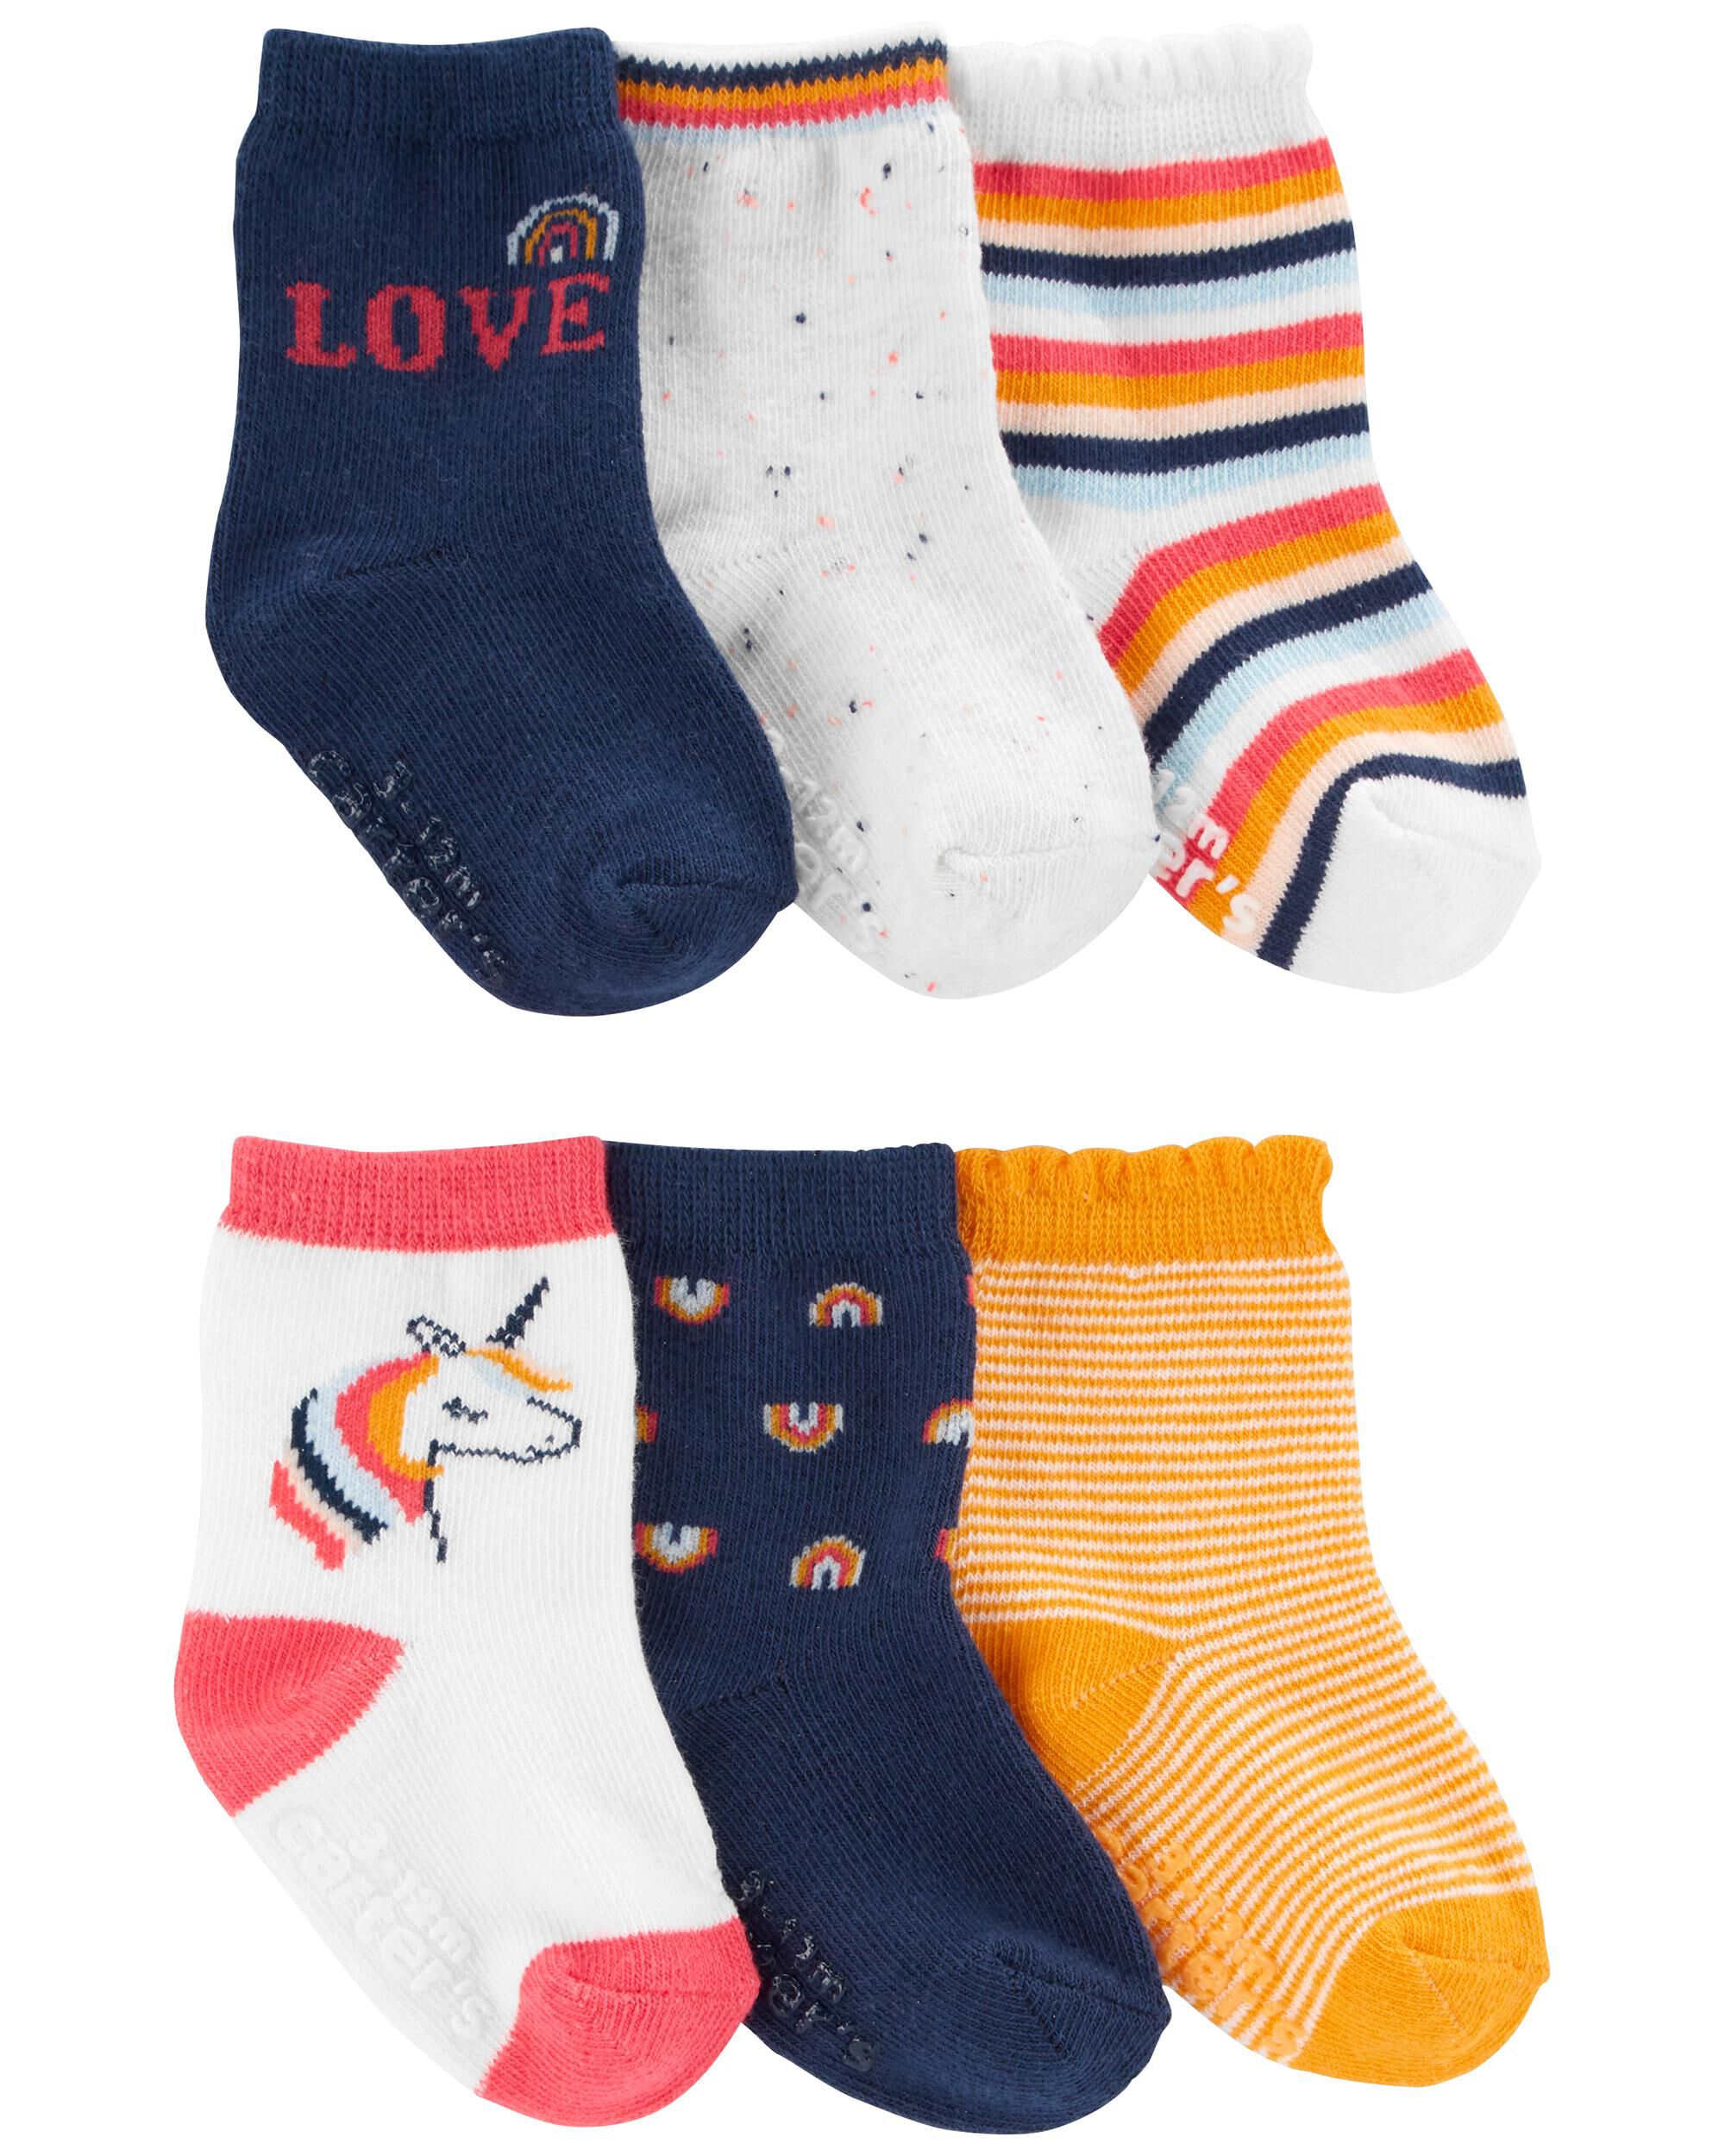 Carters Baby 6-Pack Socks